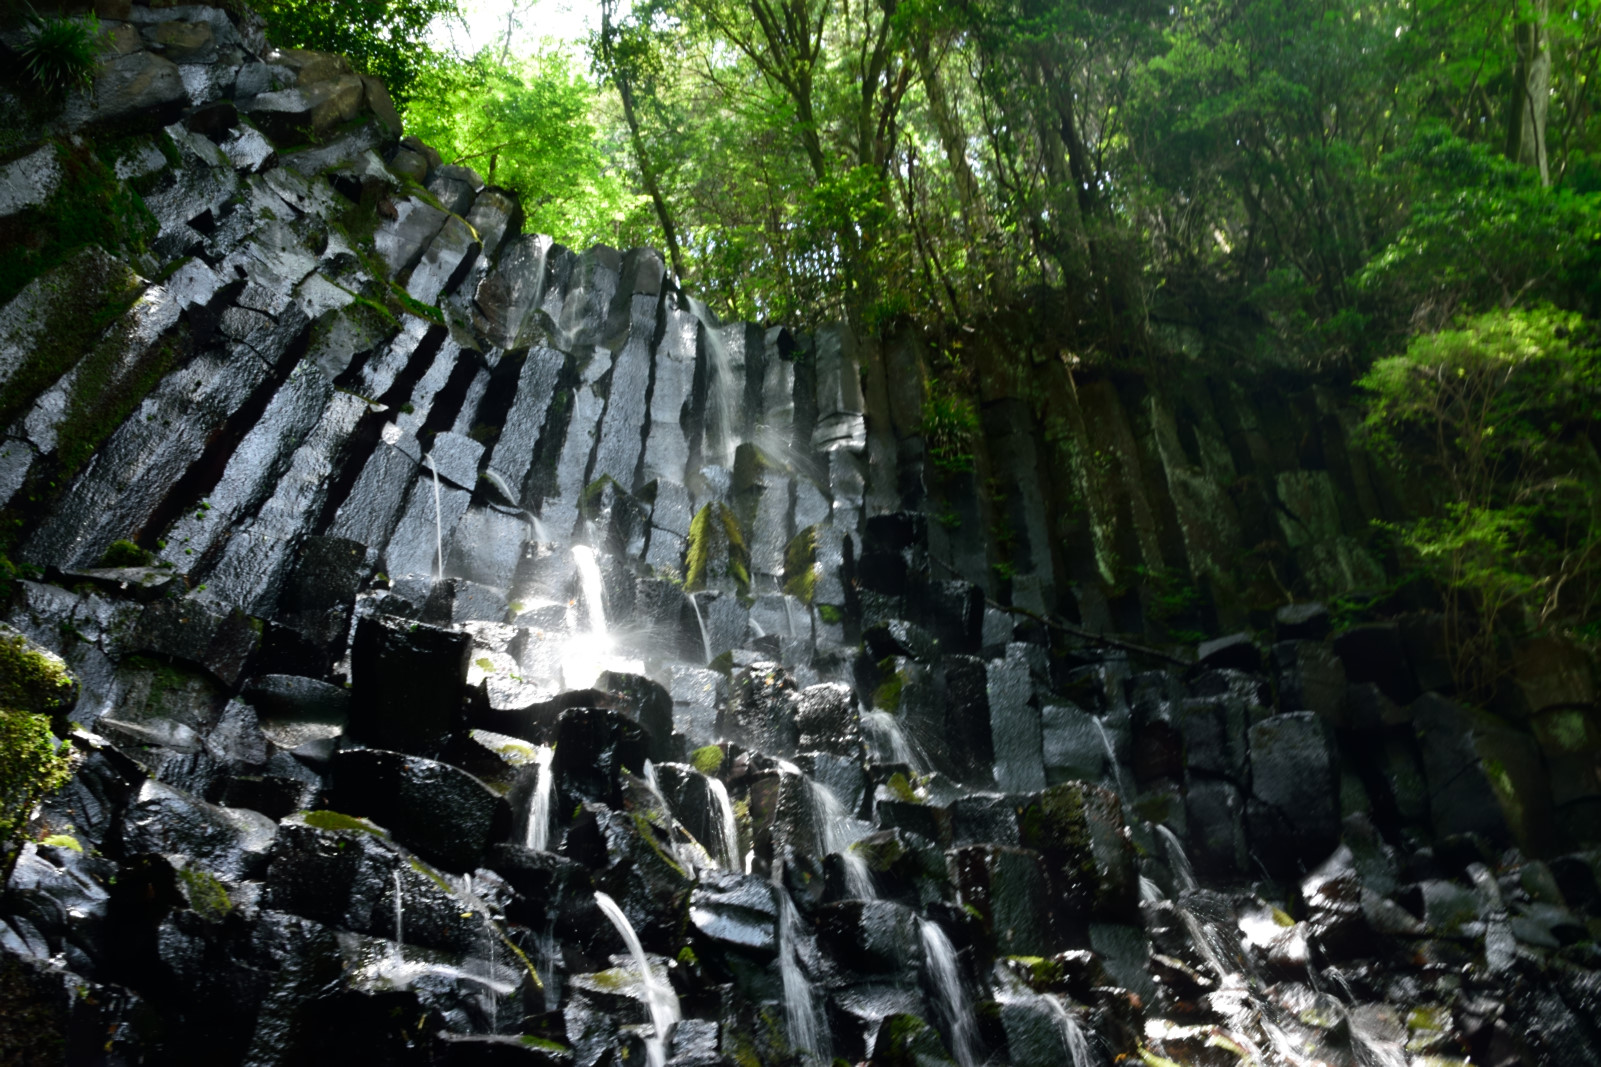 六方の滝 神奈川県 湯河原の柱状節理滝で滝オフ会 滝ガールの活動報告サイト Takigirl Waterfall Peace